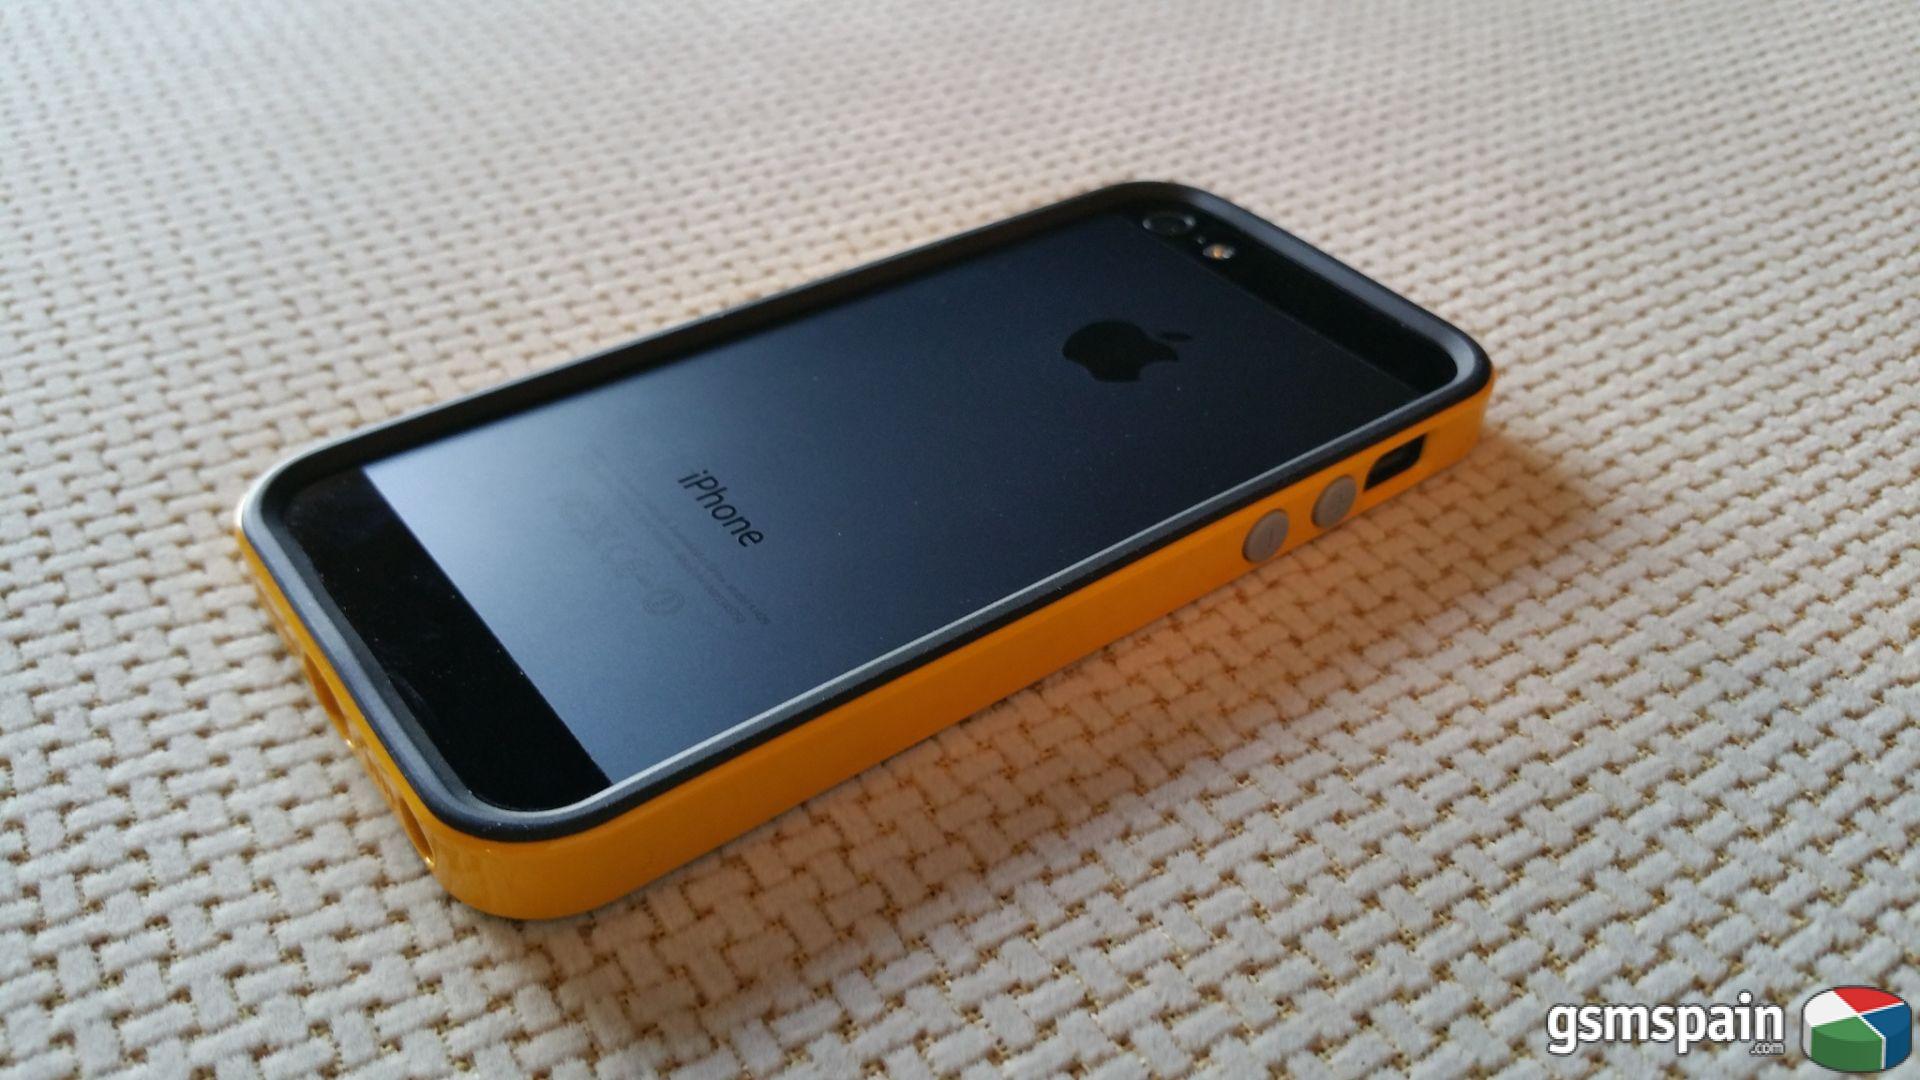 [VENDO] Apple iPhone 5 16GB LIBRE a Buen Precio. Incluye Funda Spigen Neo Hybrid EX